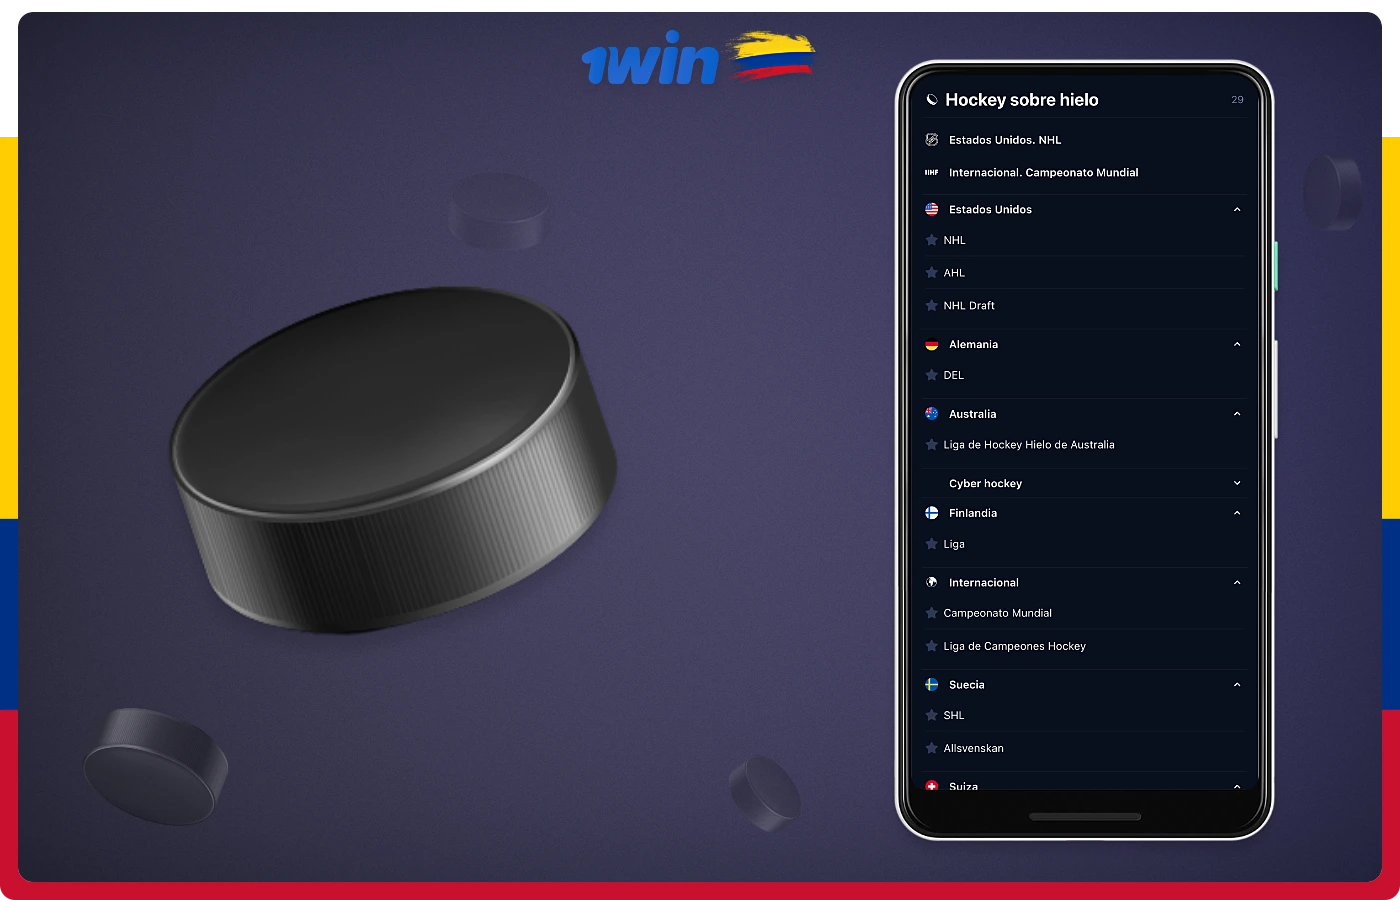 Los usuarios colombianos de 1win disponen de varias opciones de apuestas de hockey